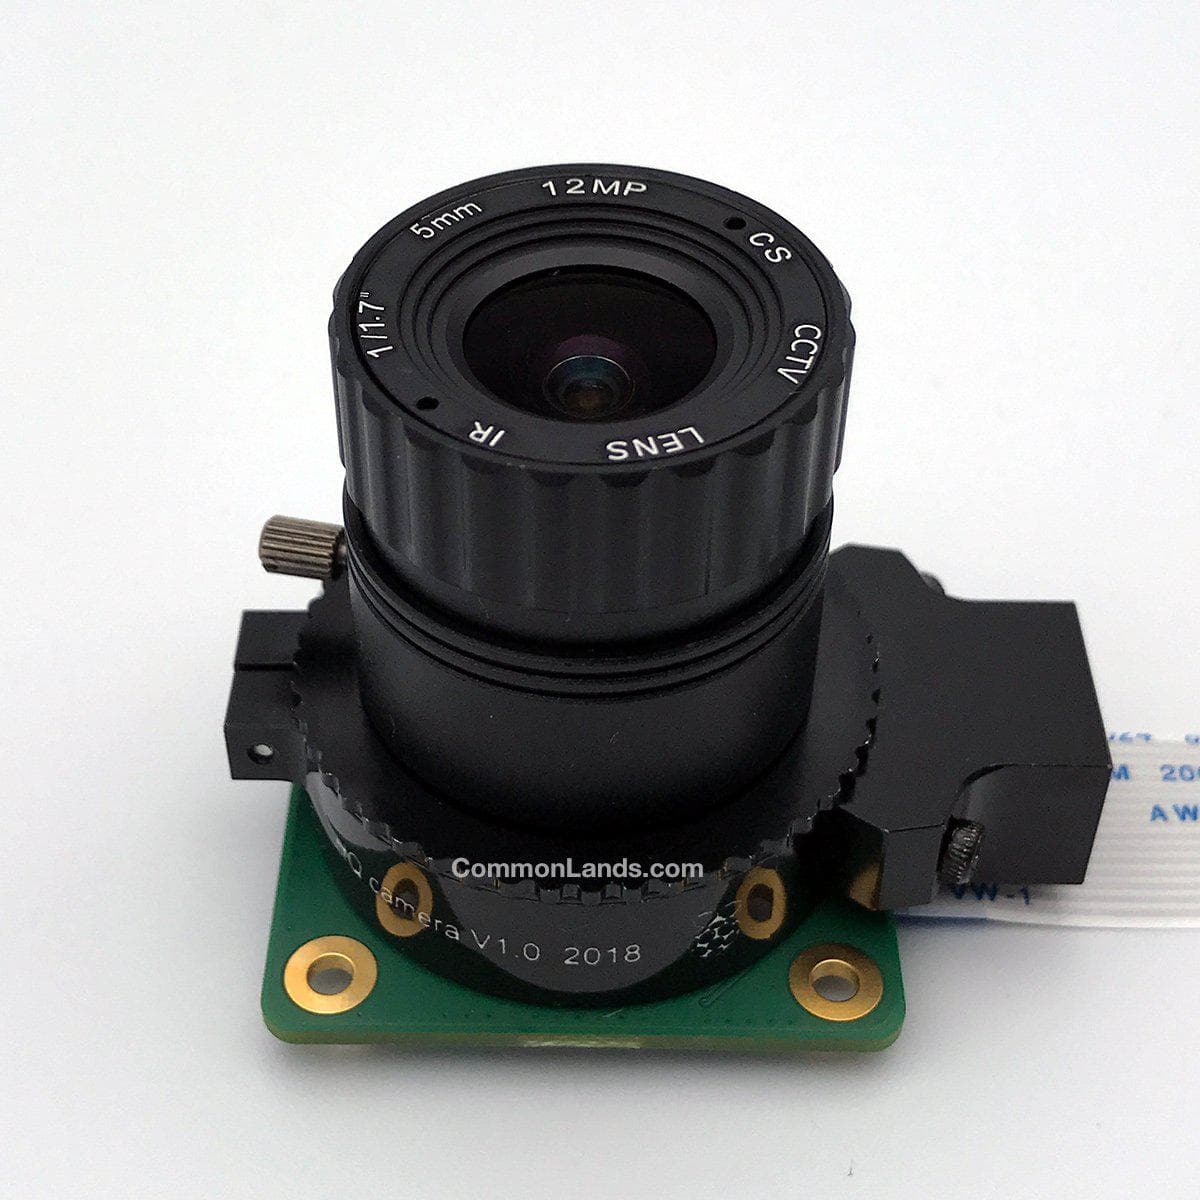 Le CommonLands CIL05.0-F2.0-CSNOIR est un objectif grand angle 5.0mm F/2.0 à monture CS pour les caméras à monture CS de 12MP+ comme le Raspberry Pi HQ.